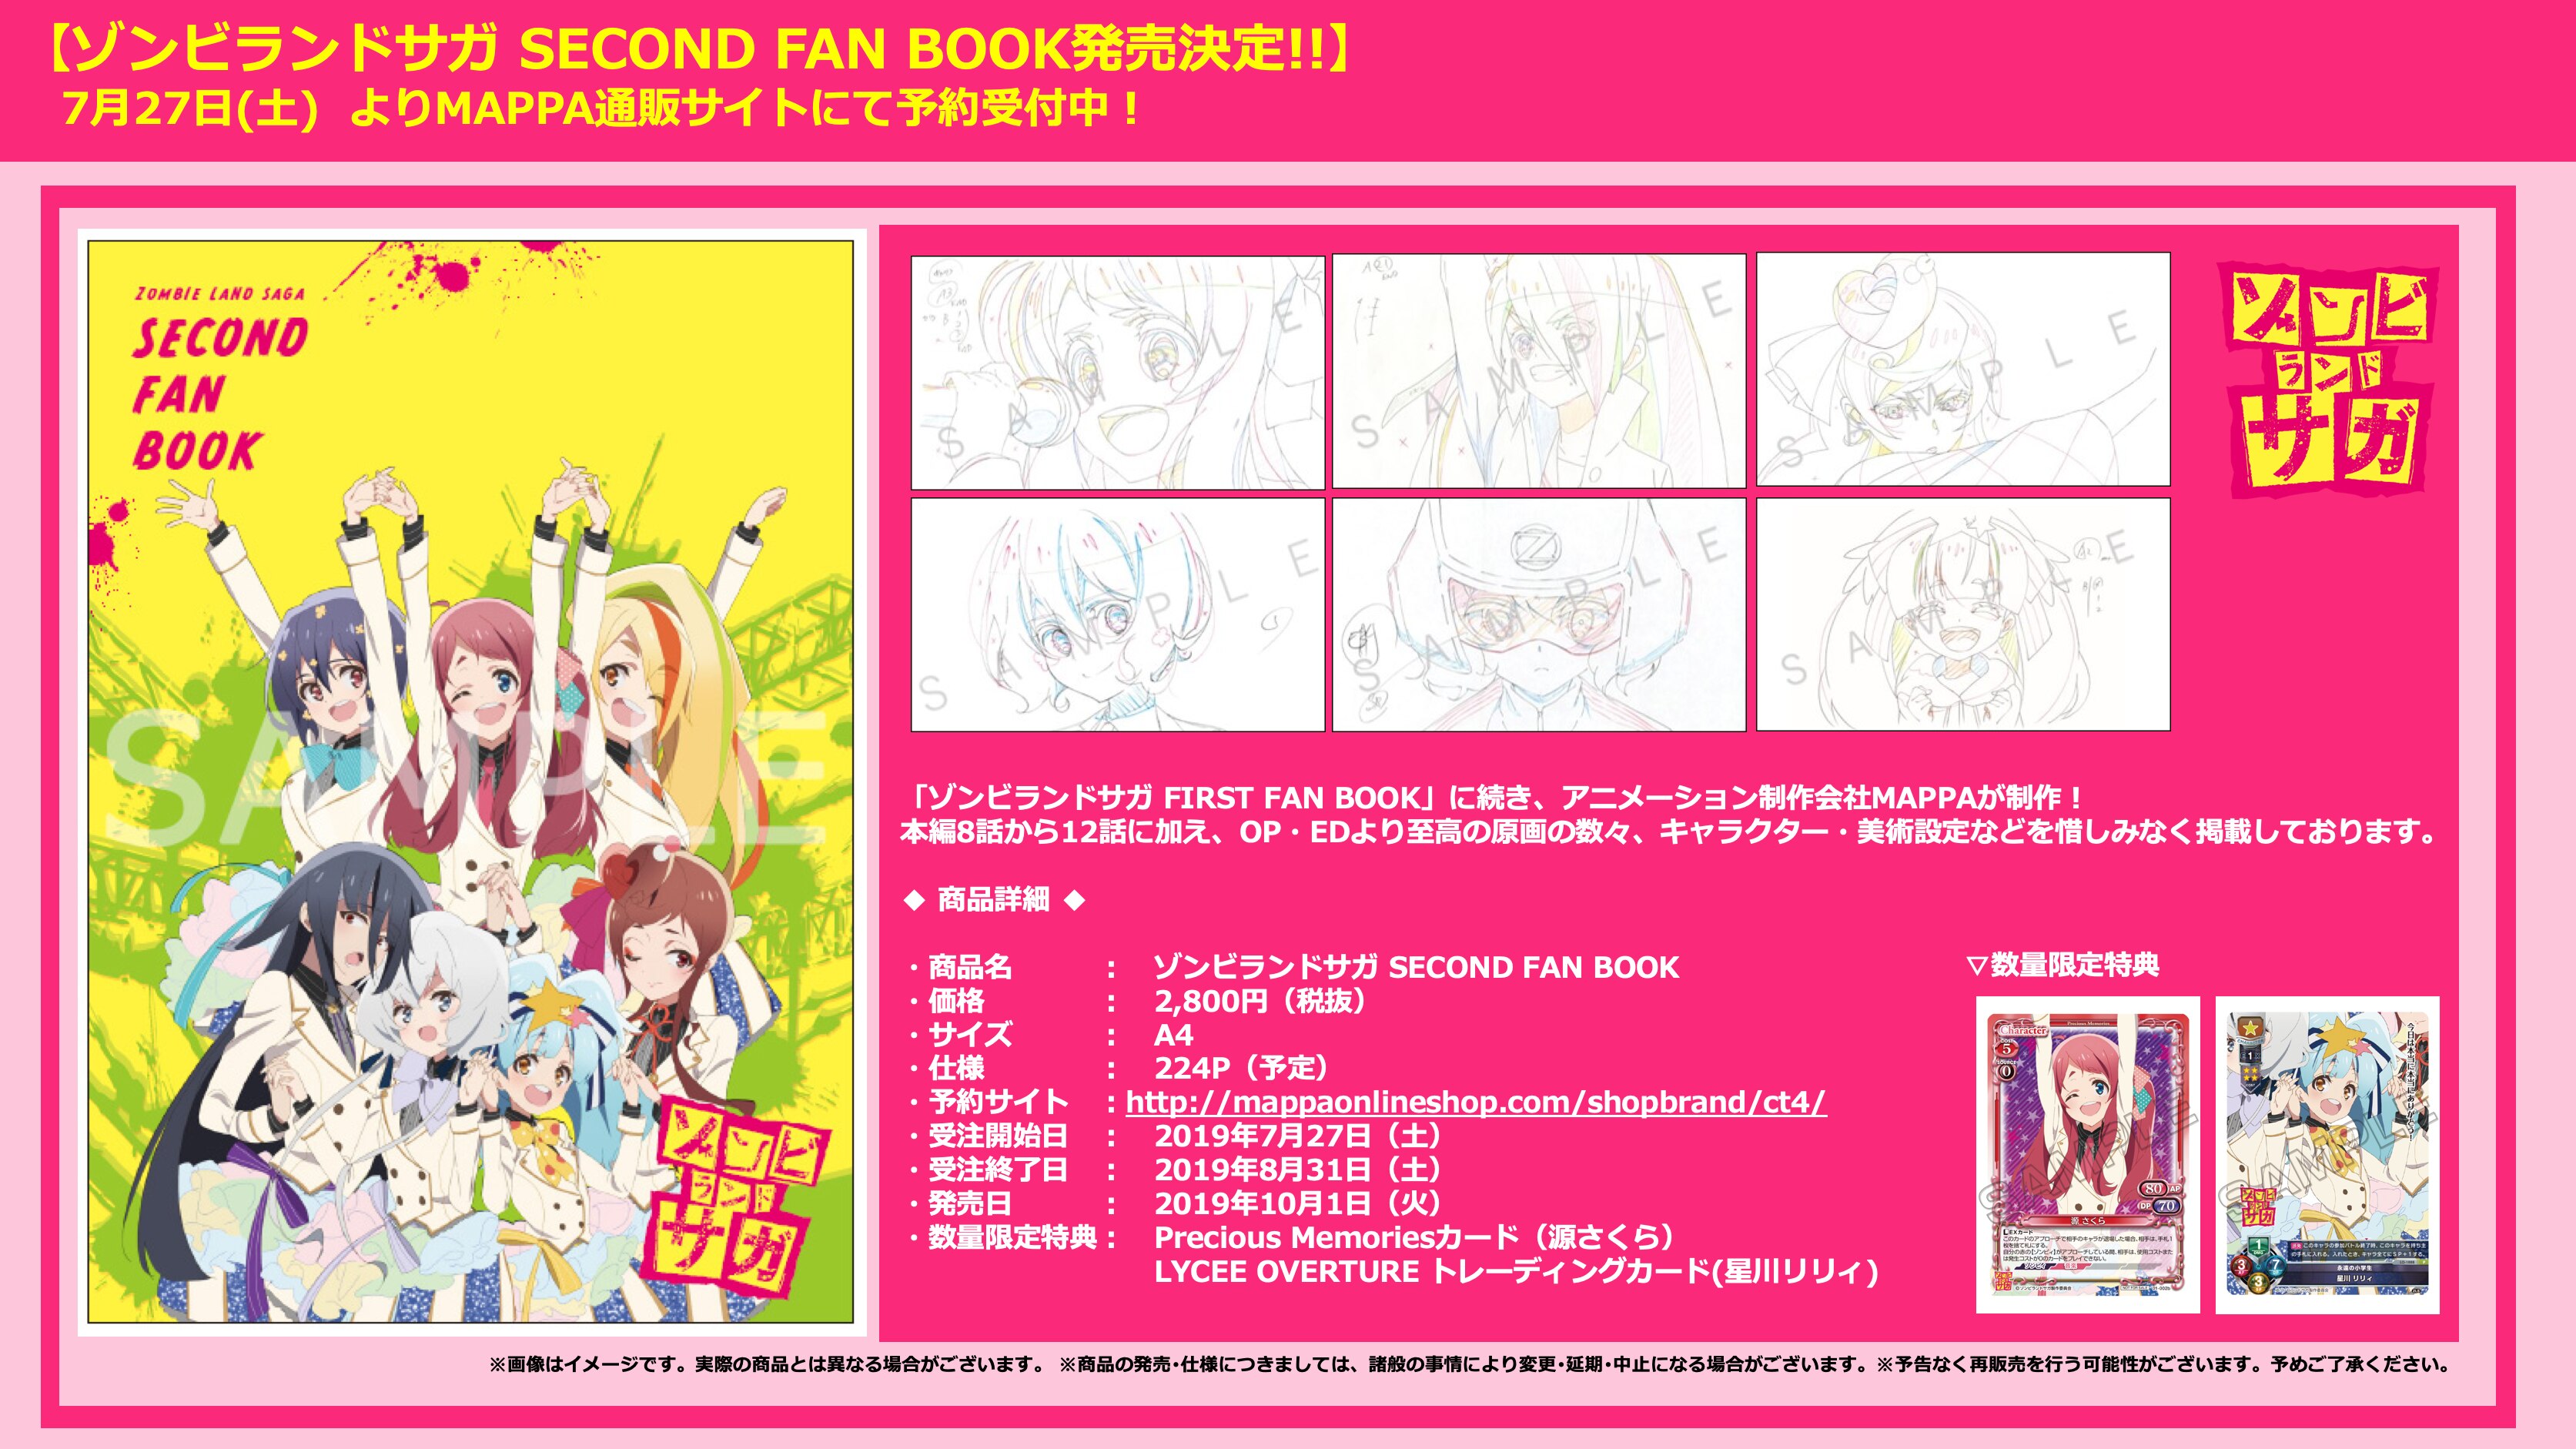 ゾンビランドサガ Second Fan Book 受注開始 News Tvアニメ ゾンビランドサガ 公式サイト